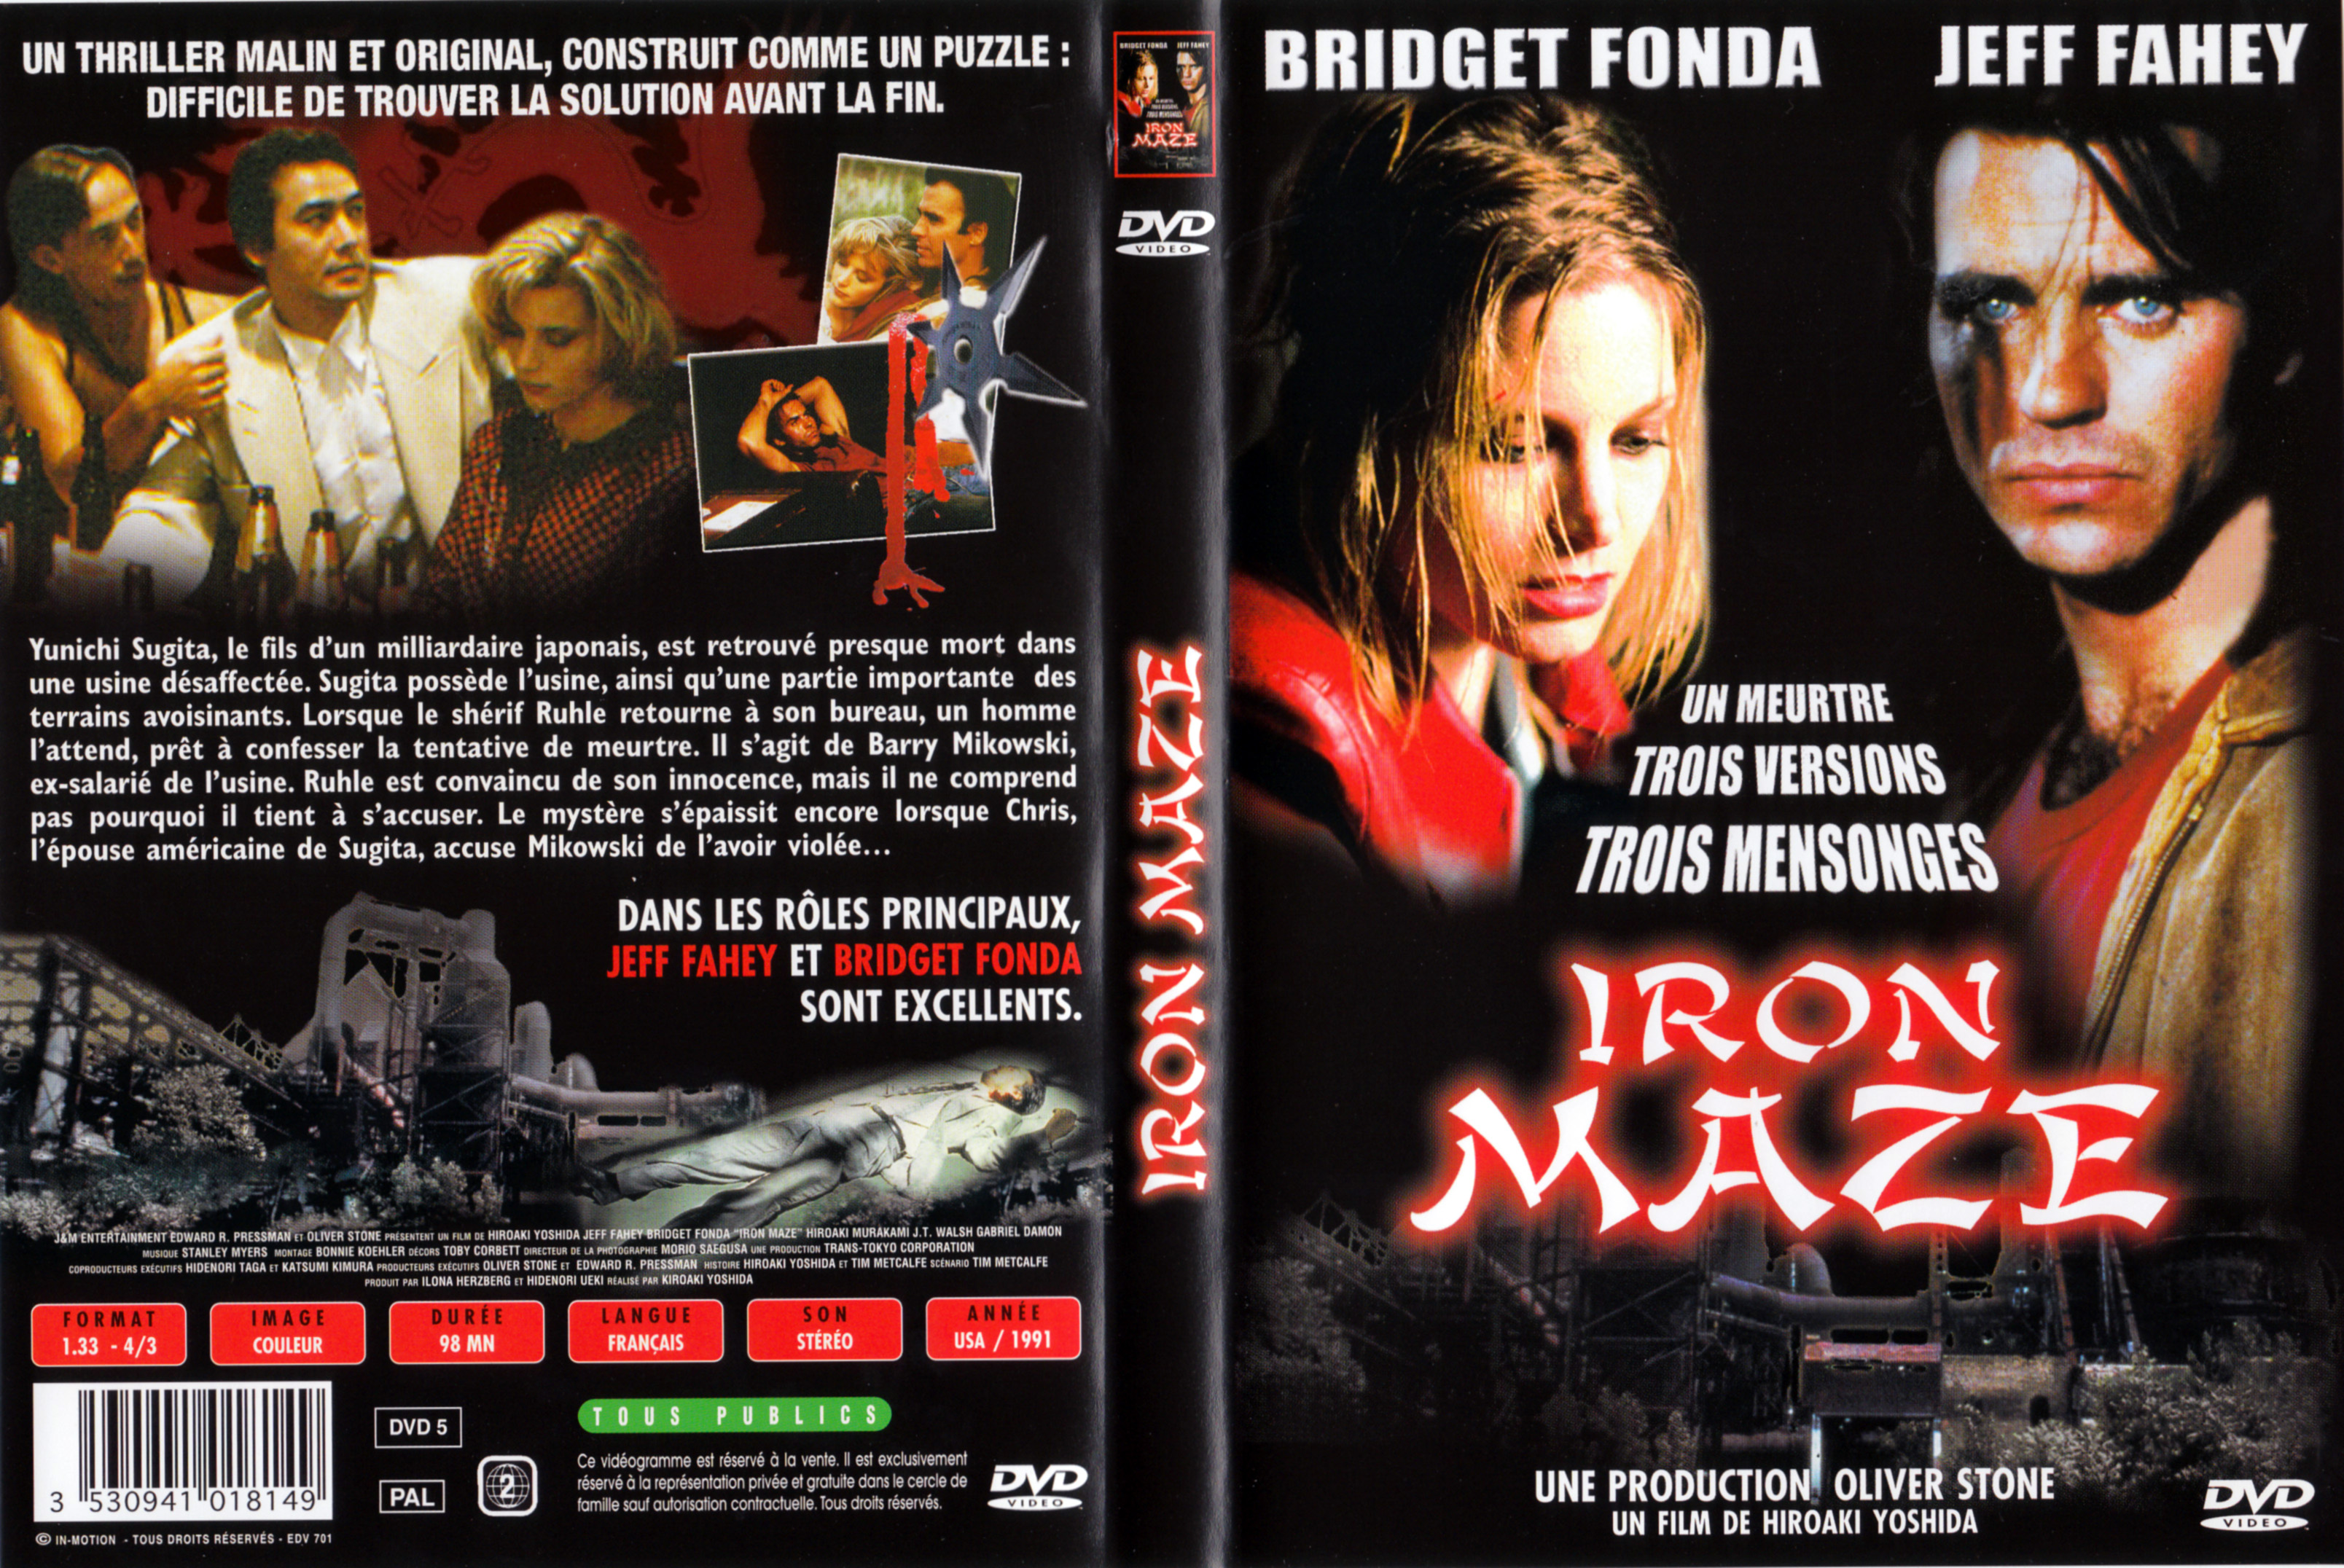 Jaquette DVD Iron maze